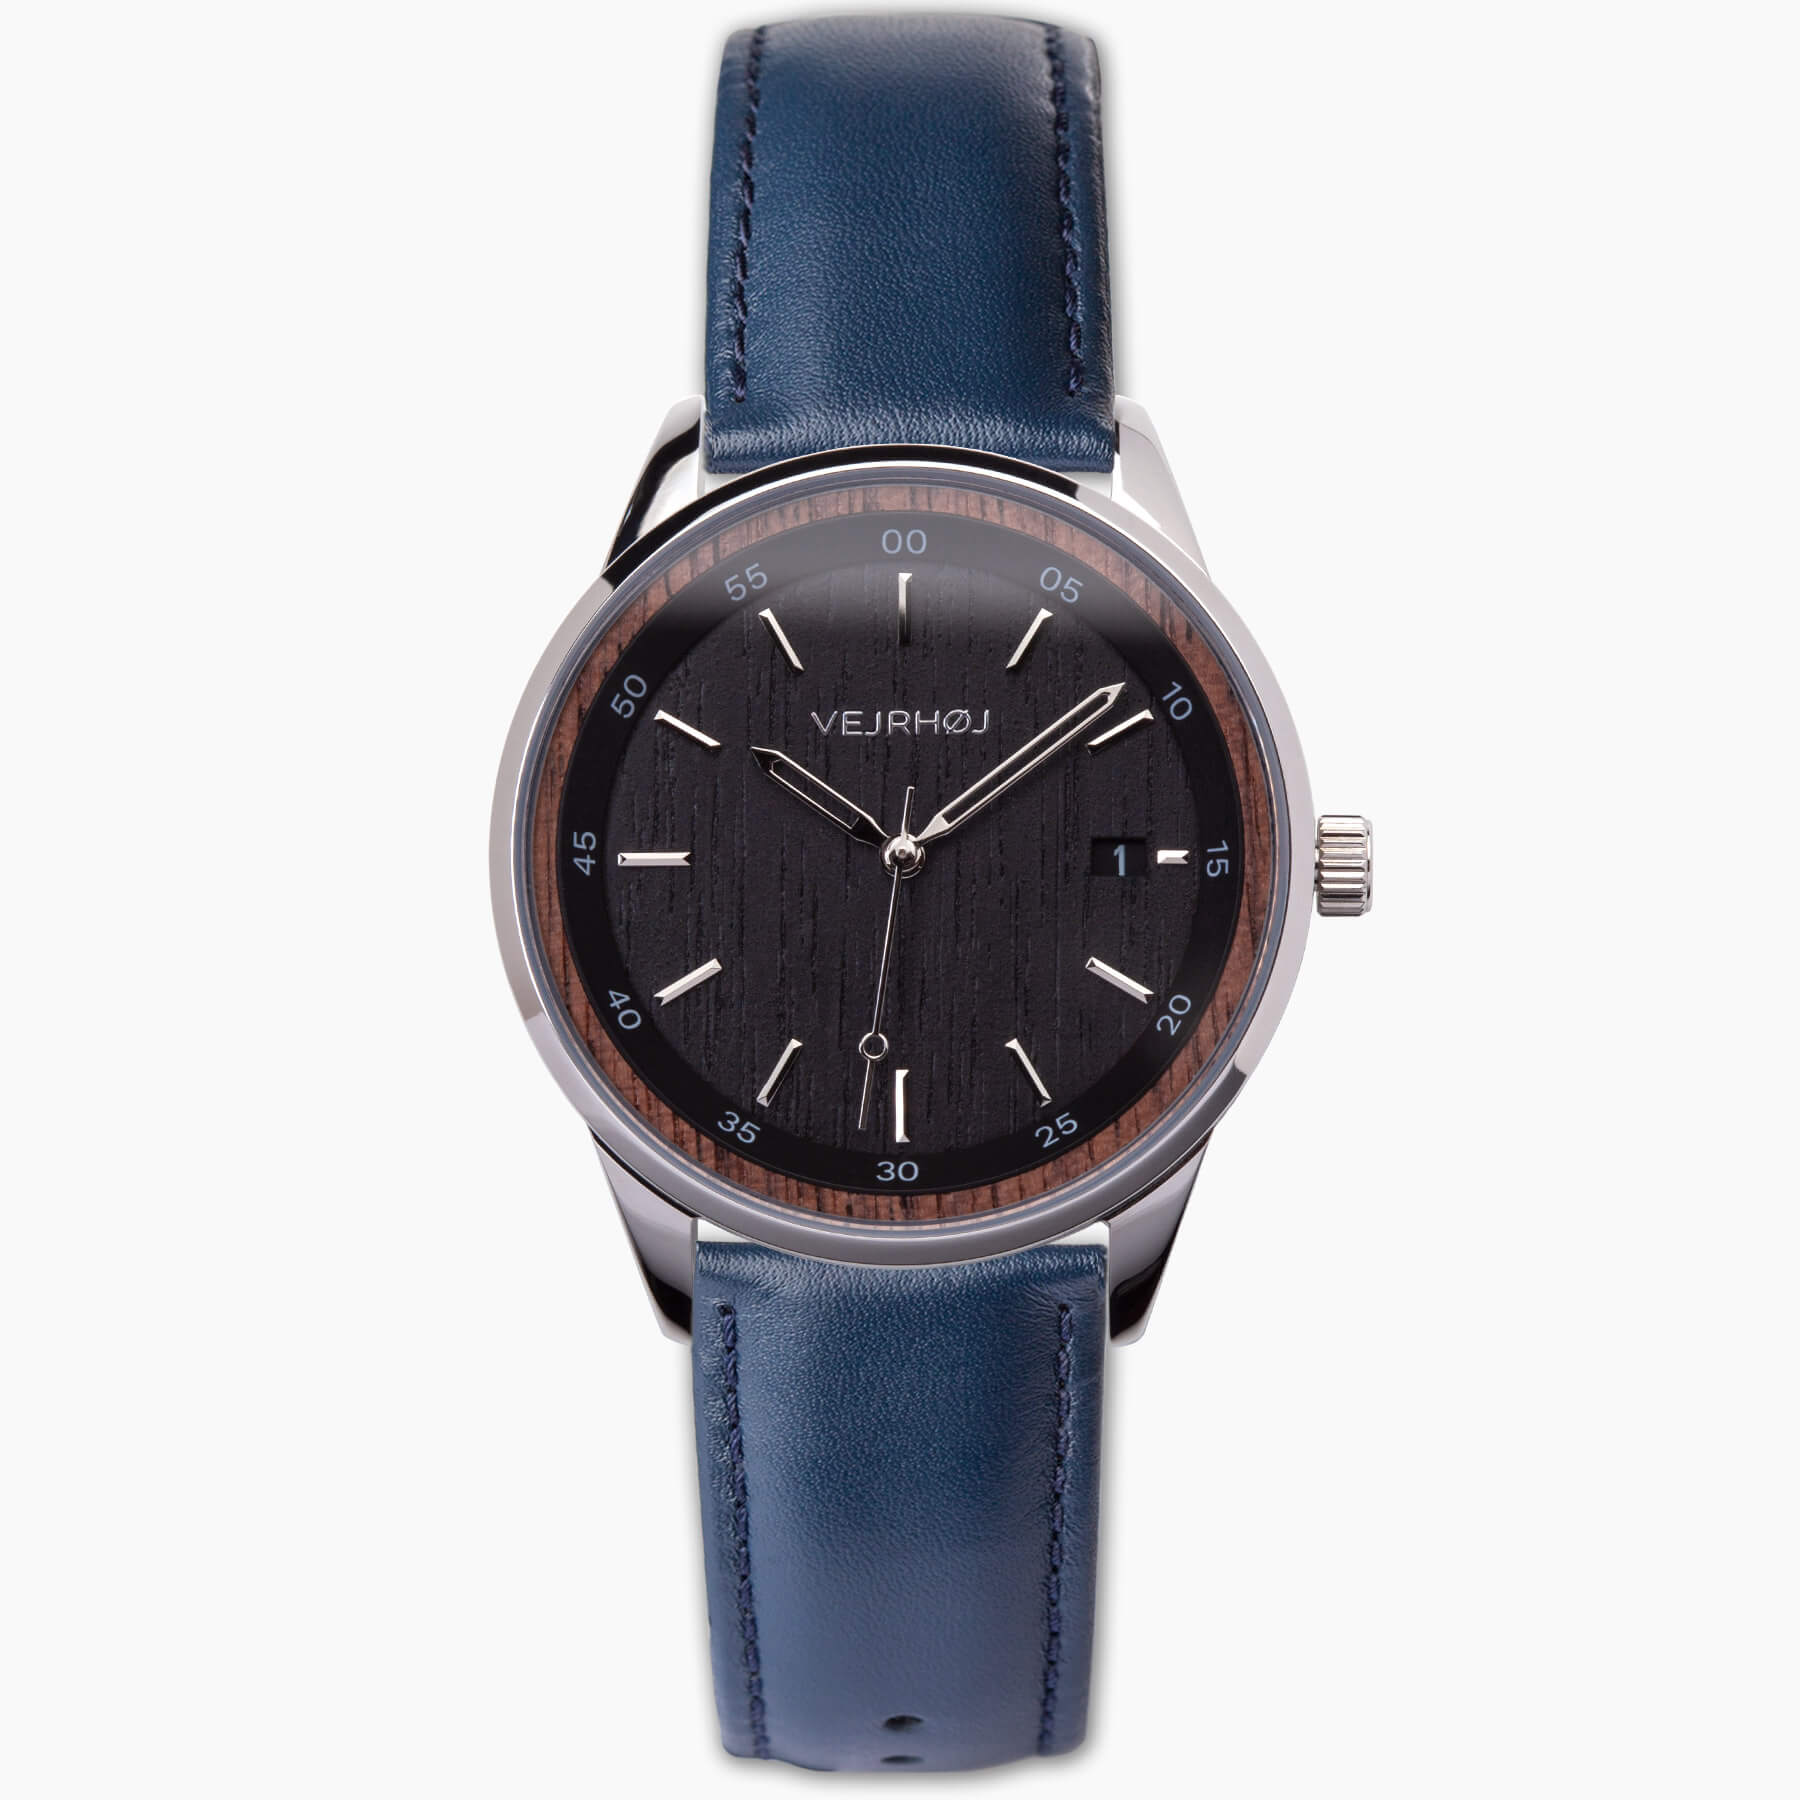 ブルーなストラップのついた漆黒染めたクルミ材の機械式腕時計